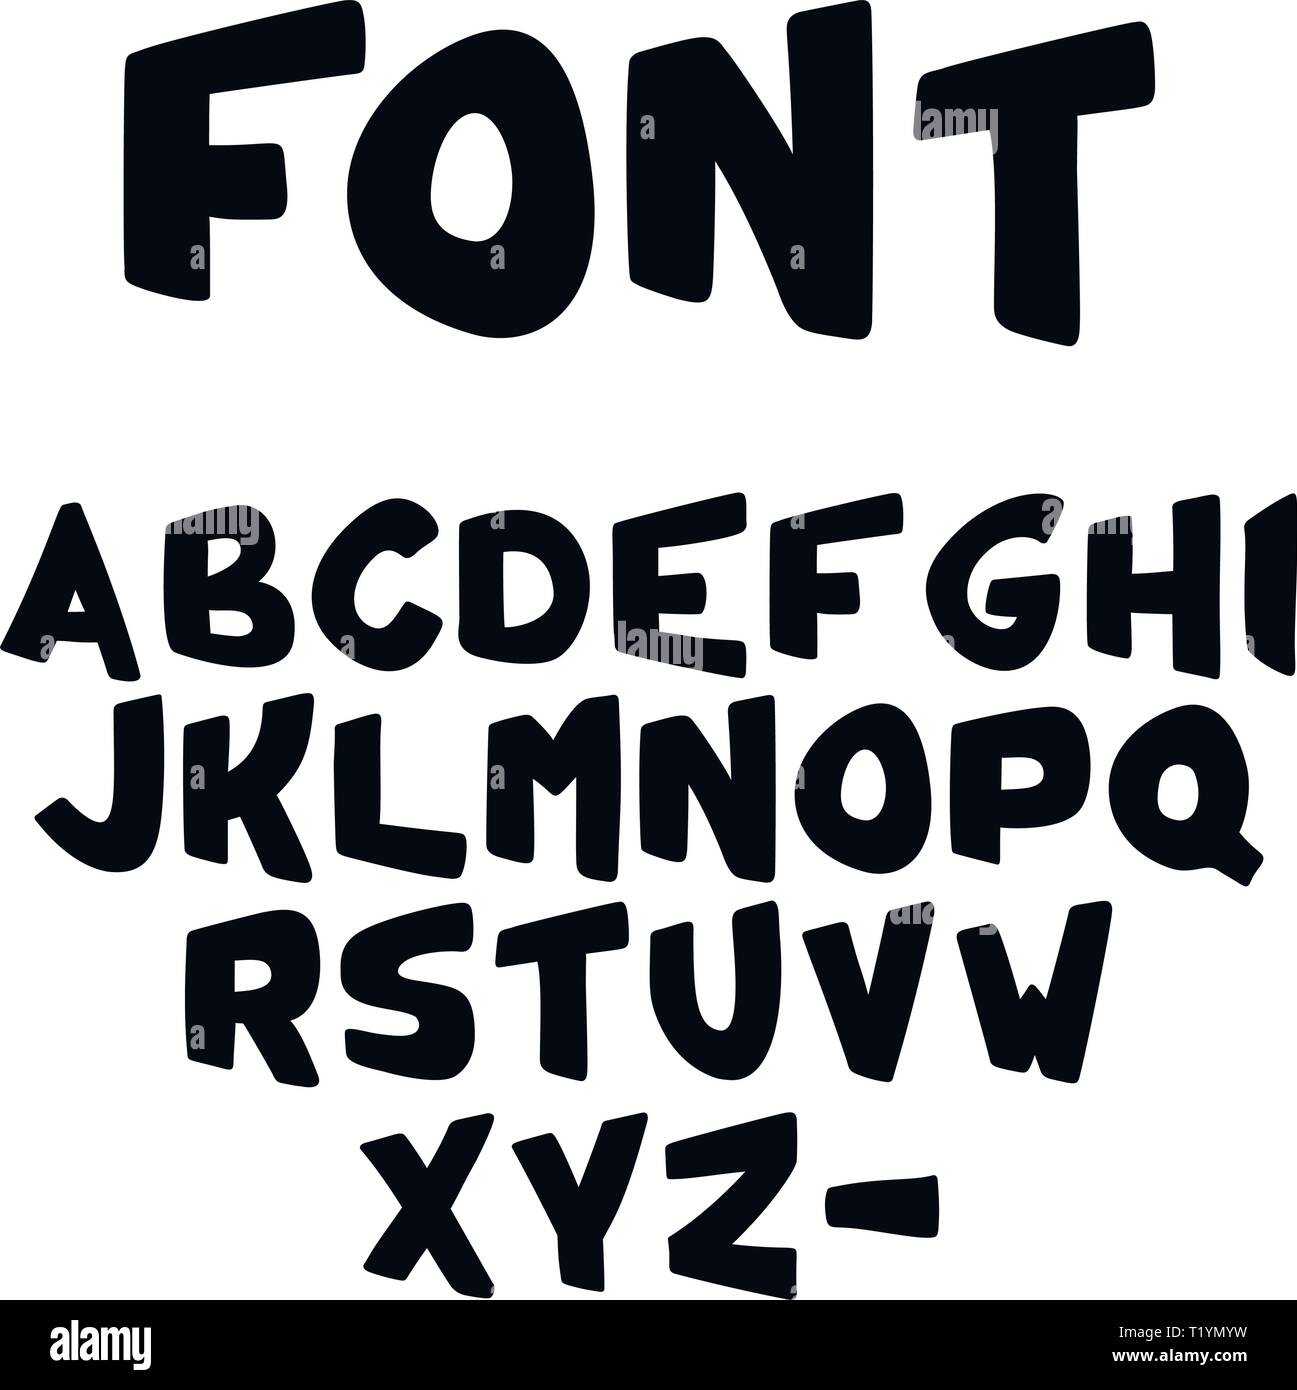 Bold font Banque d'images vectorielles - Alamy